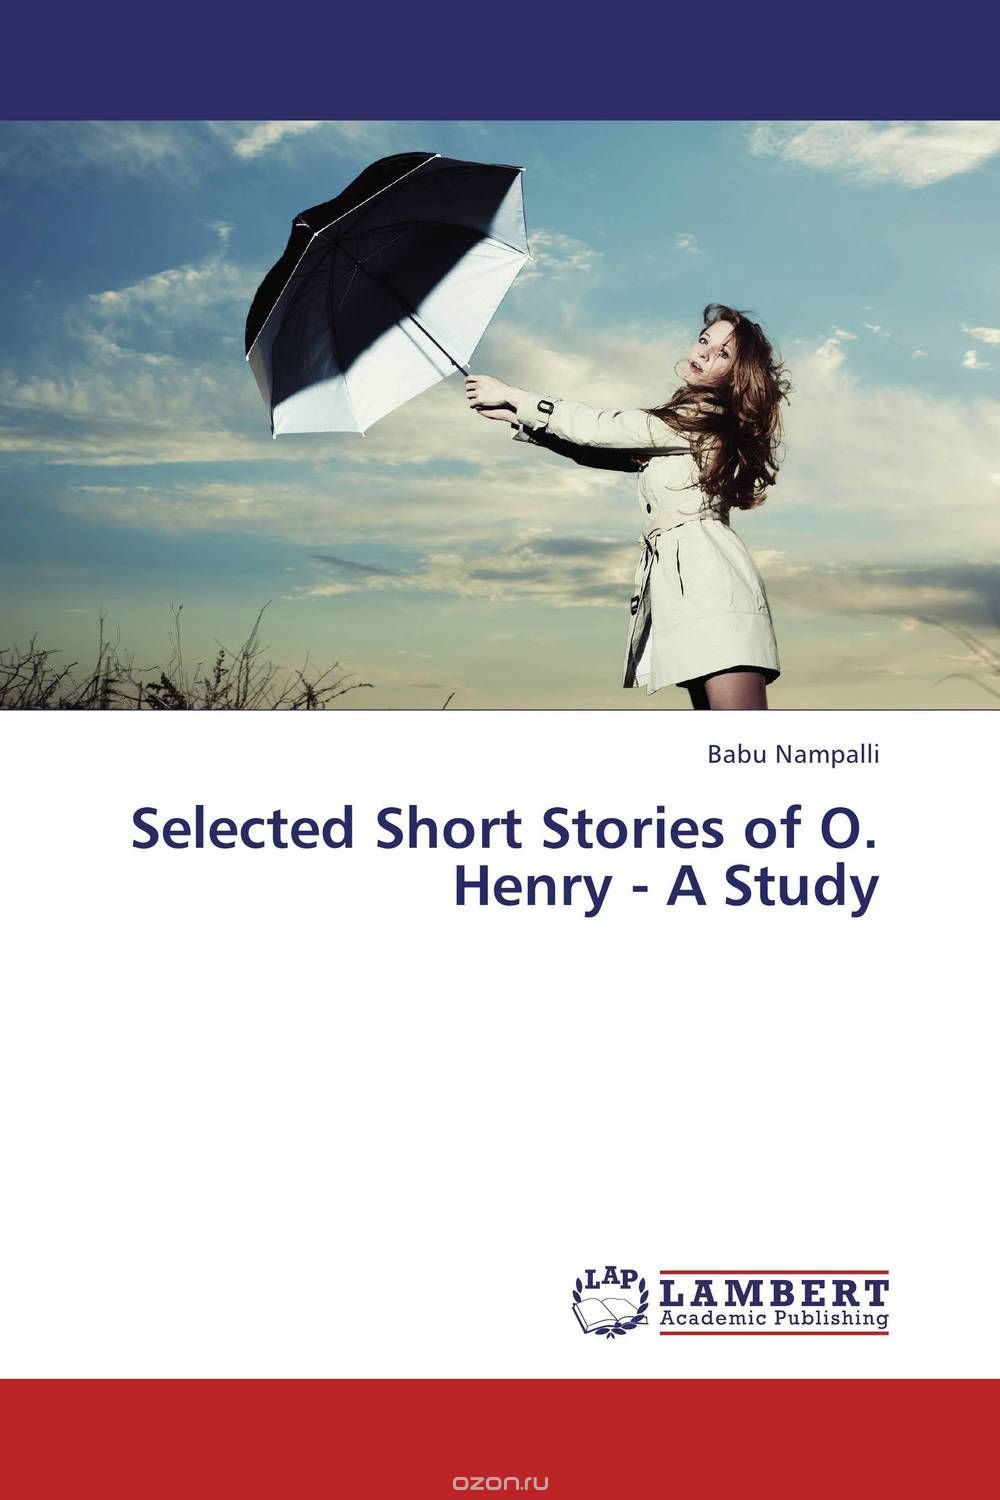 Скачать книгу "Selected Short Stories of O. Henry - A Study"